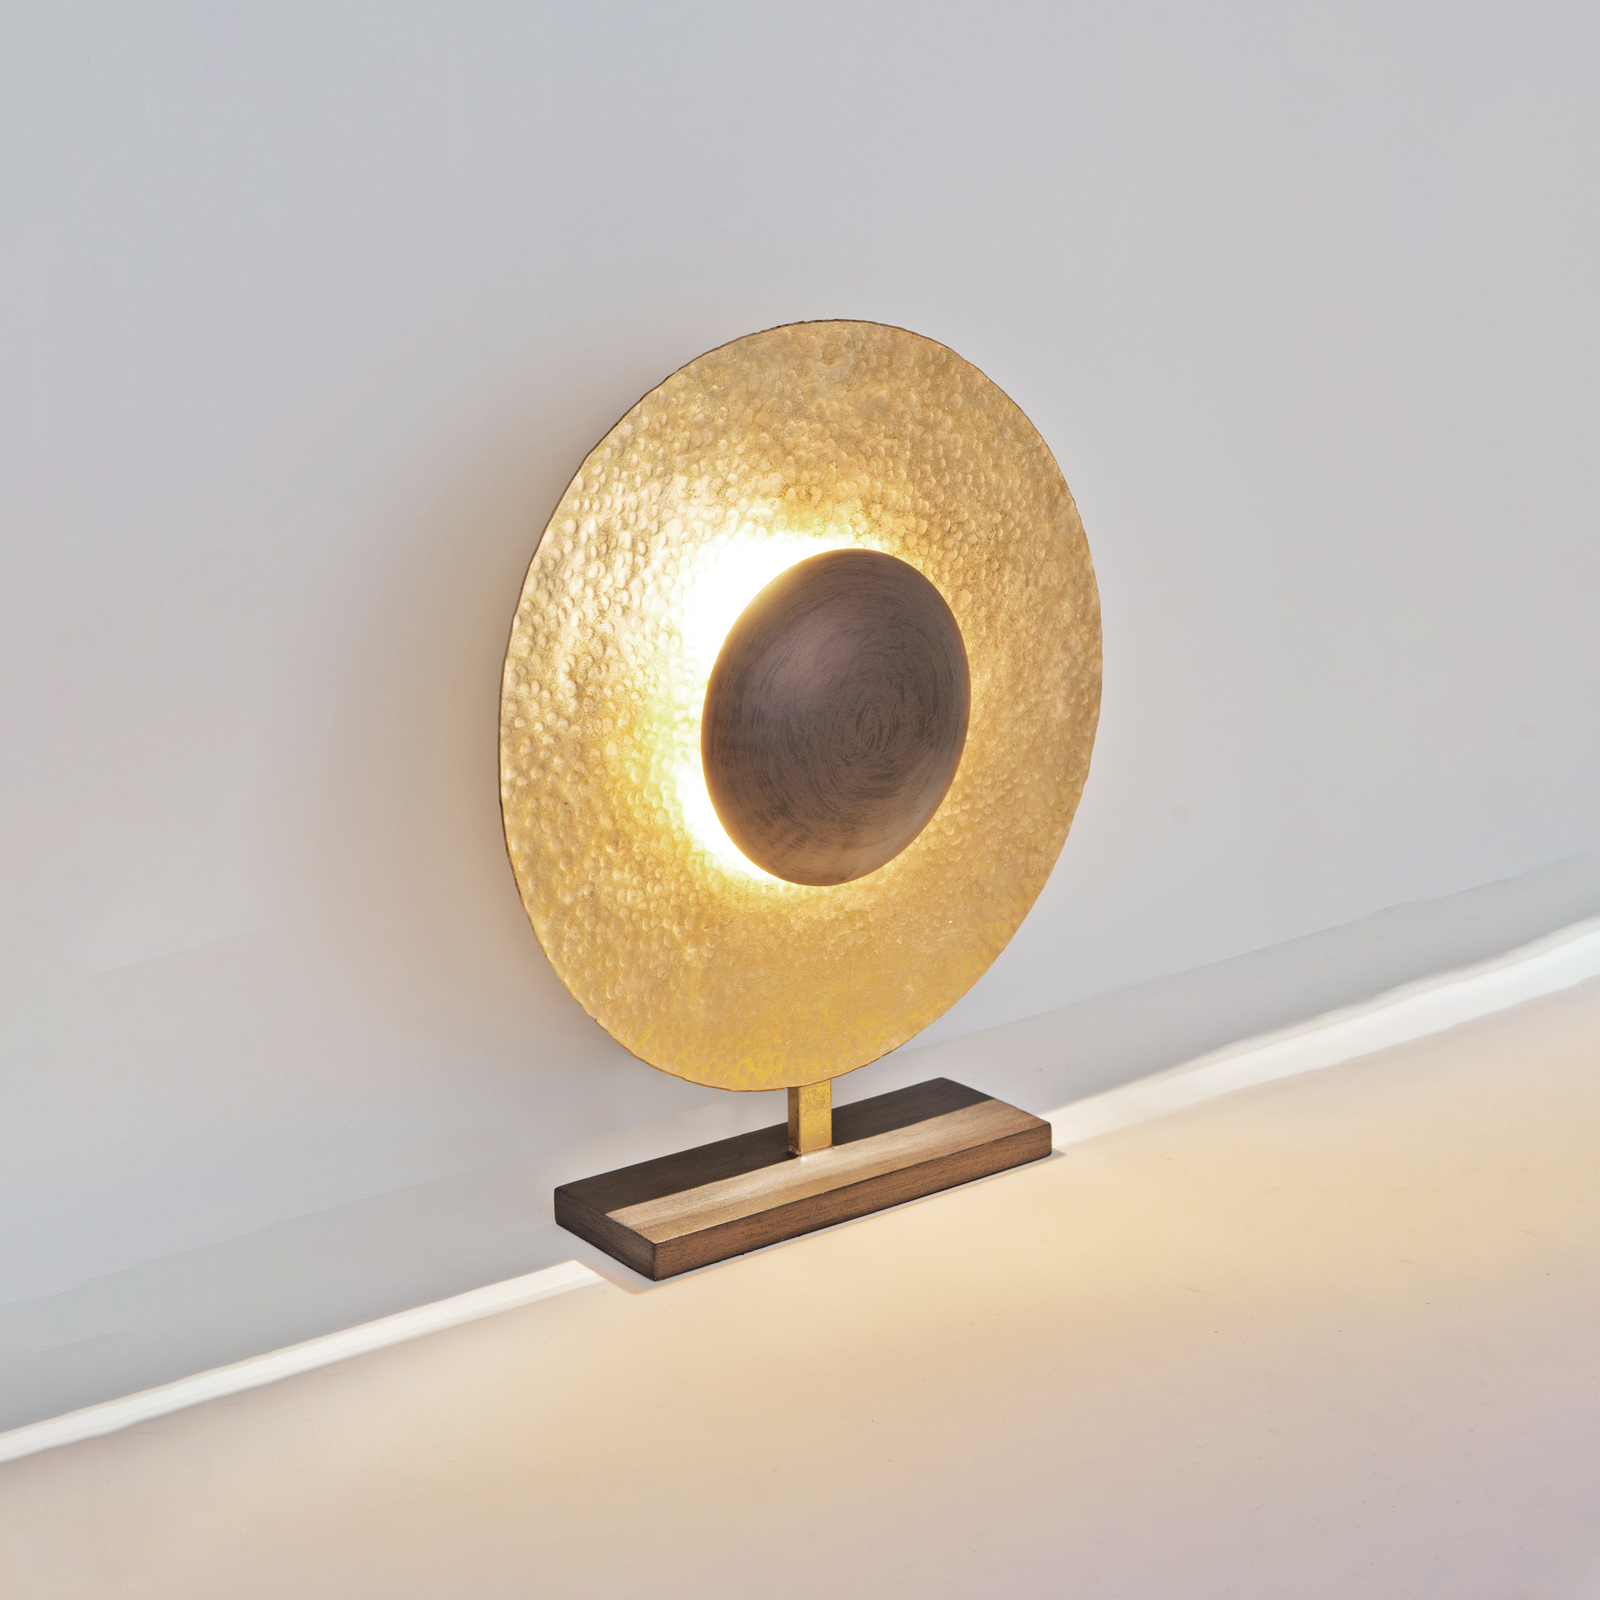 Asztali lámpa Satellite 52 cm magas arany/barna